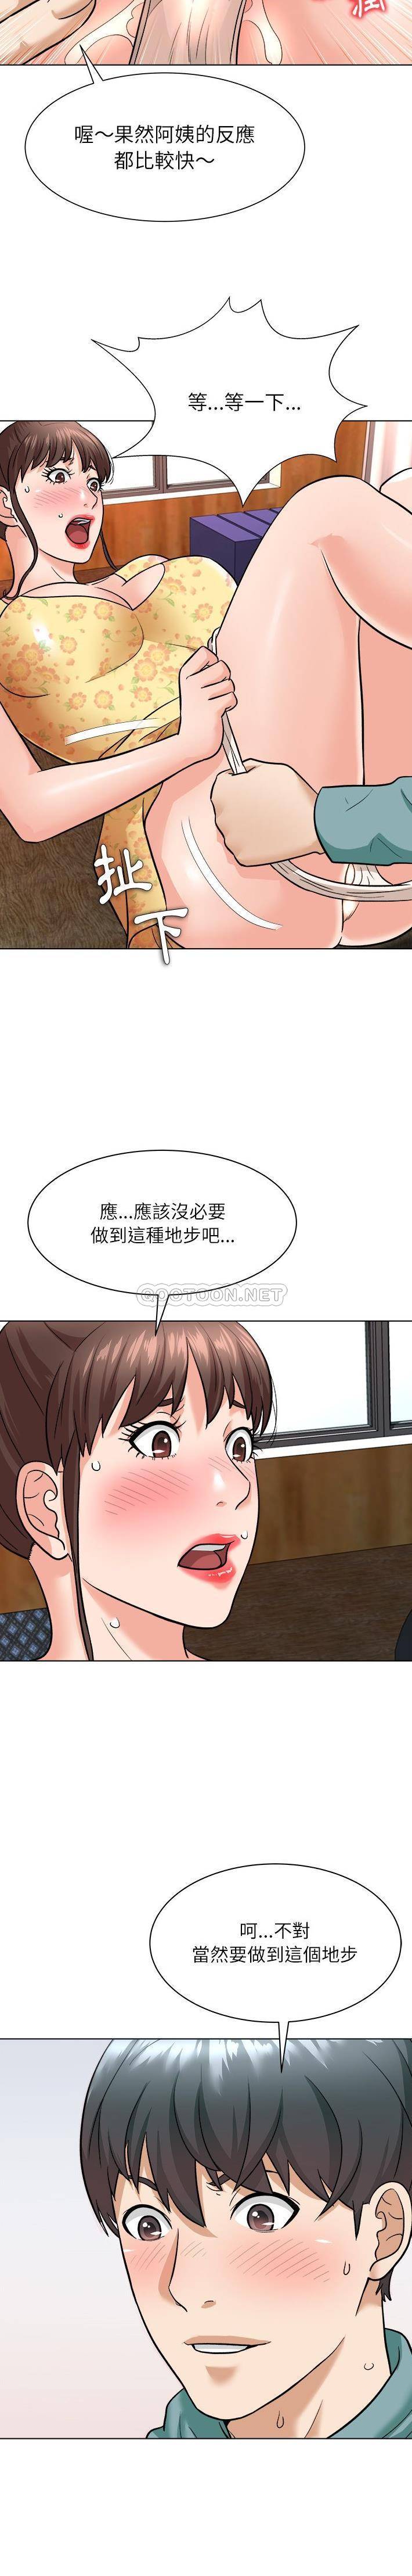 韩国污漫画 豪賭陷阱 第6话 11